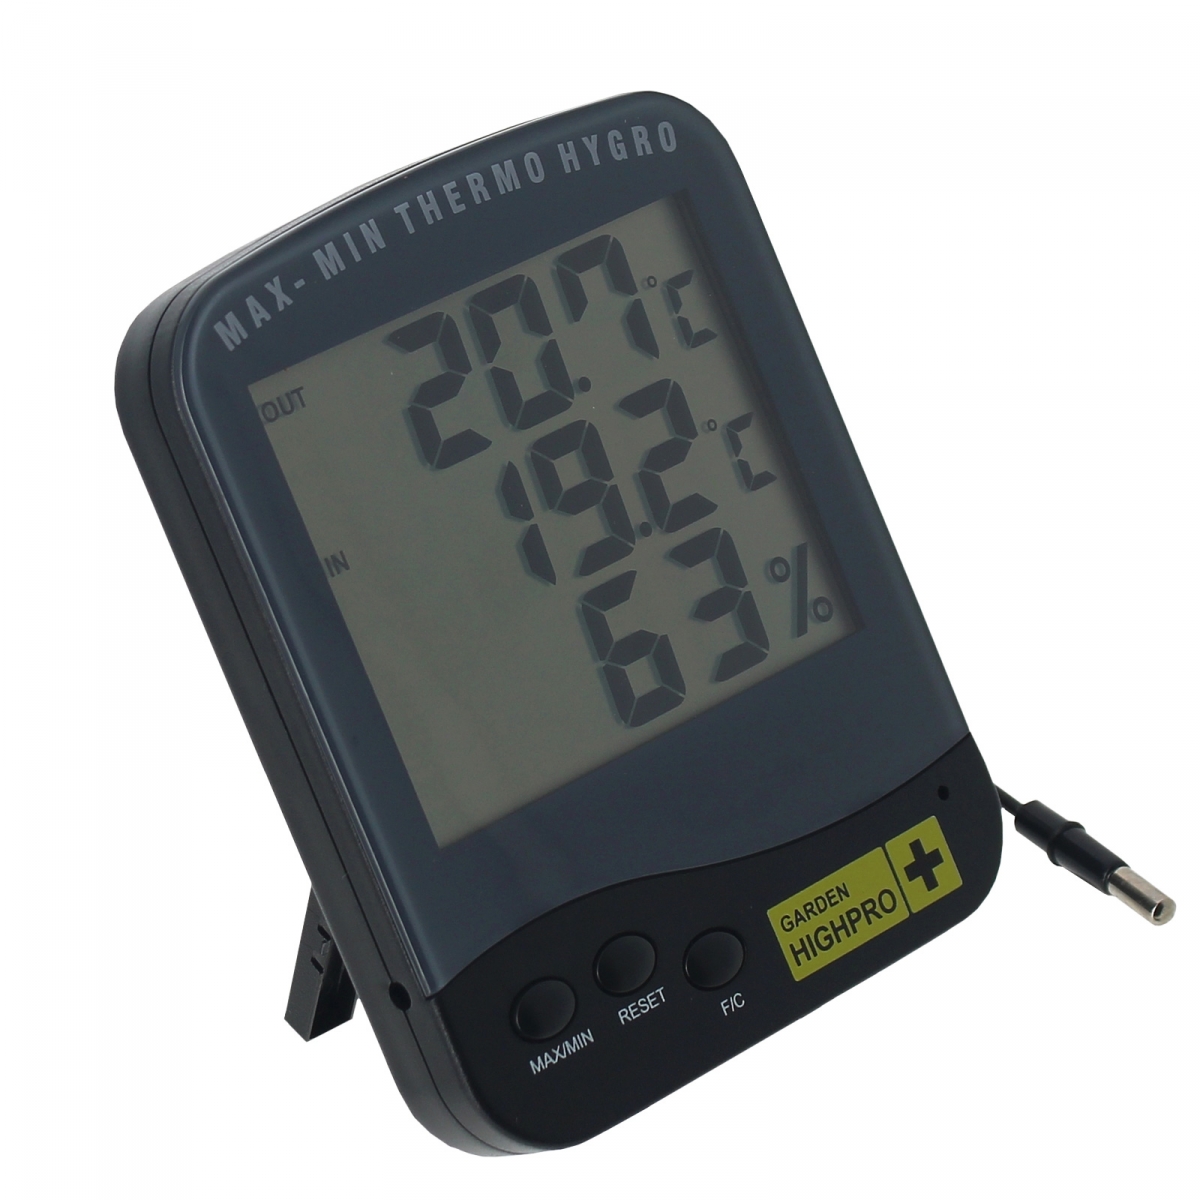 Thermomètre Hygromètre digital à sonde mini